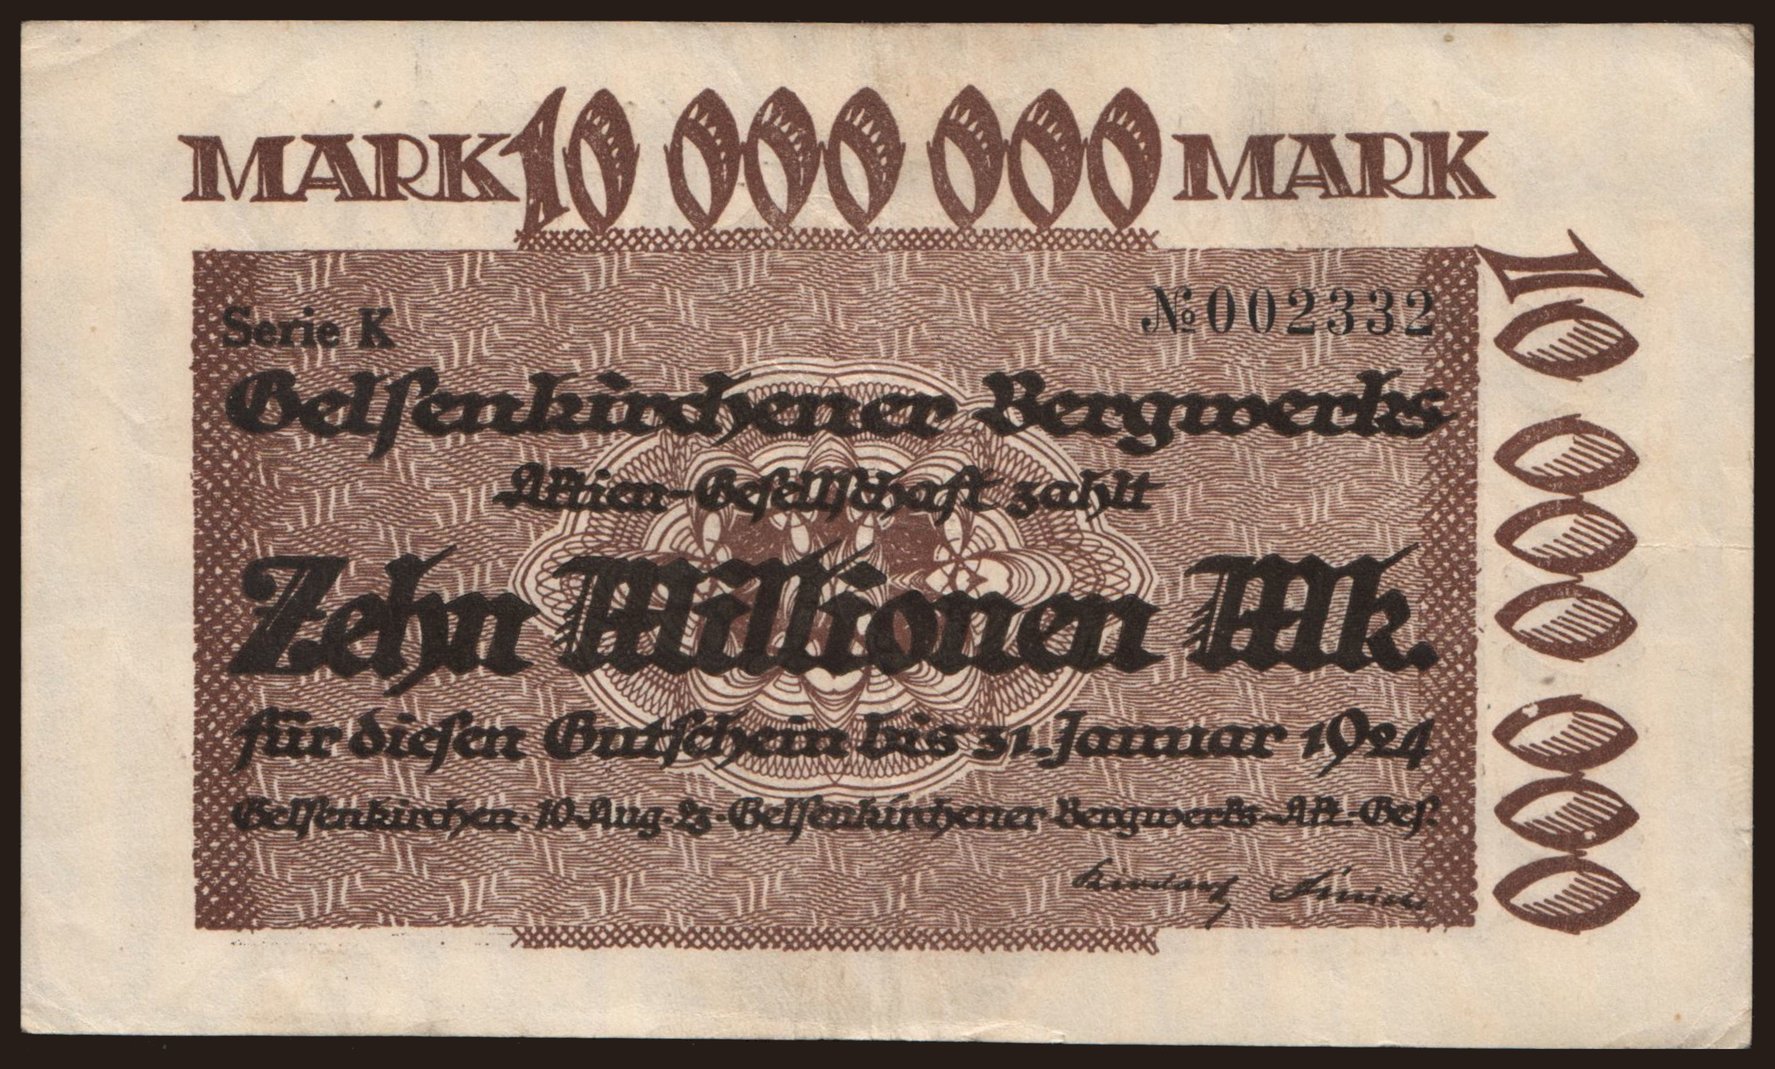 Gelsenkirchen/ Gelsenkirchener Bergwerks A.-G., 10.000.000 Mark, 1923